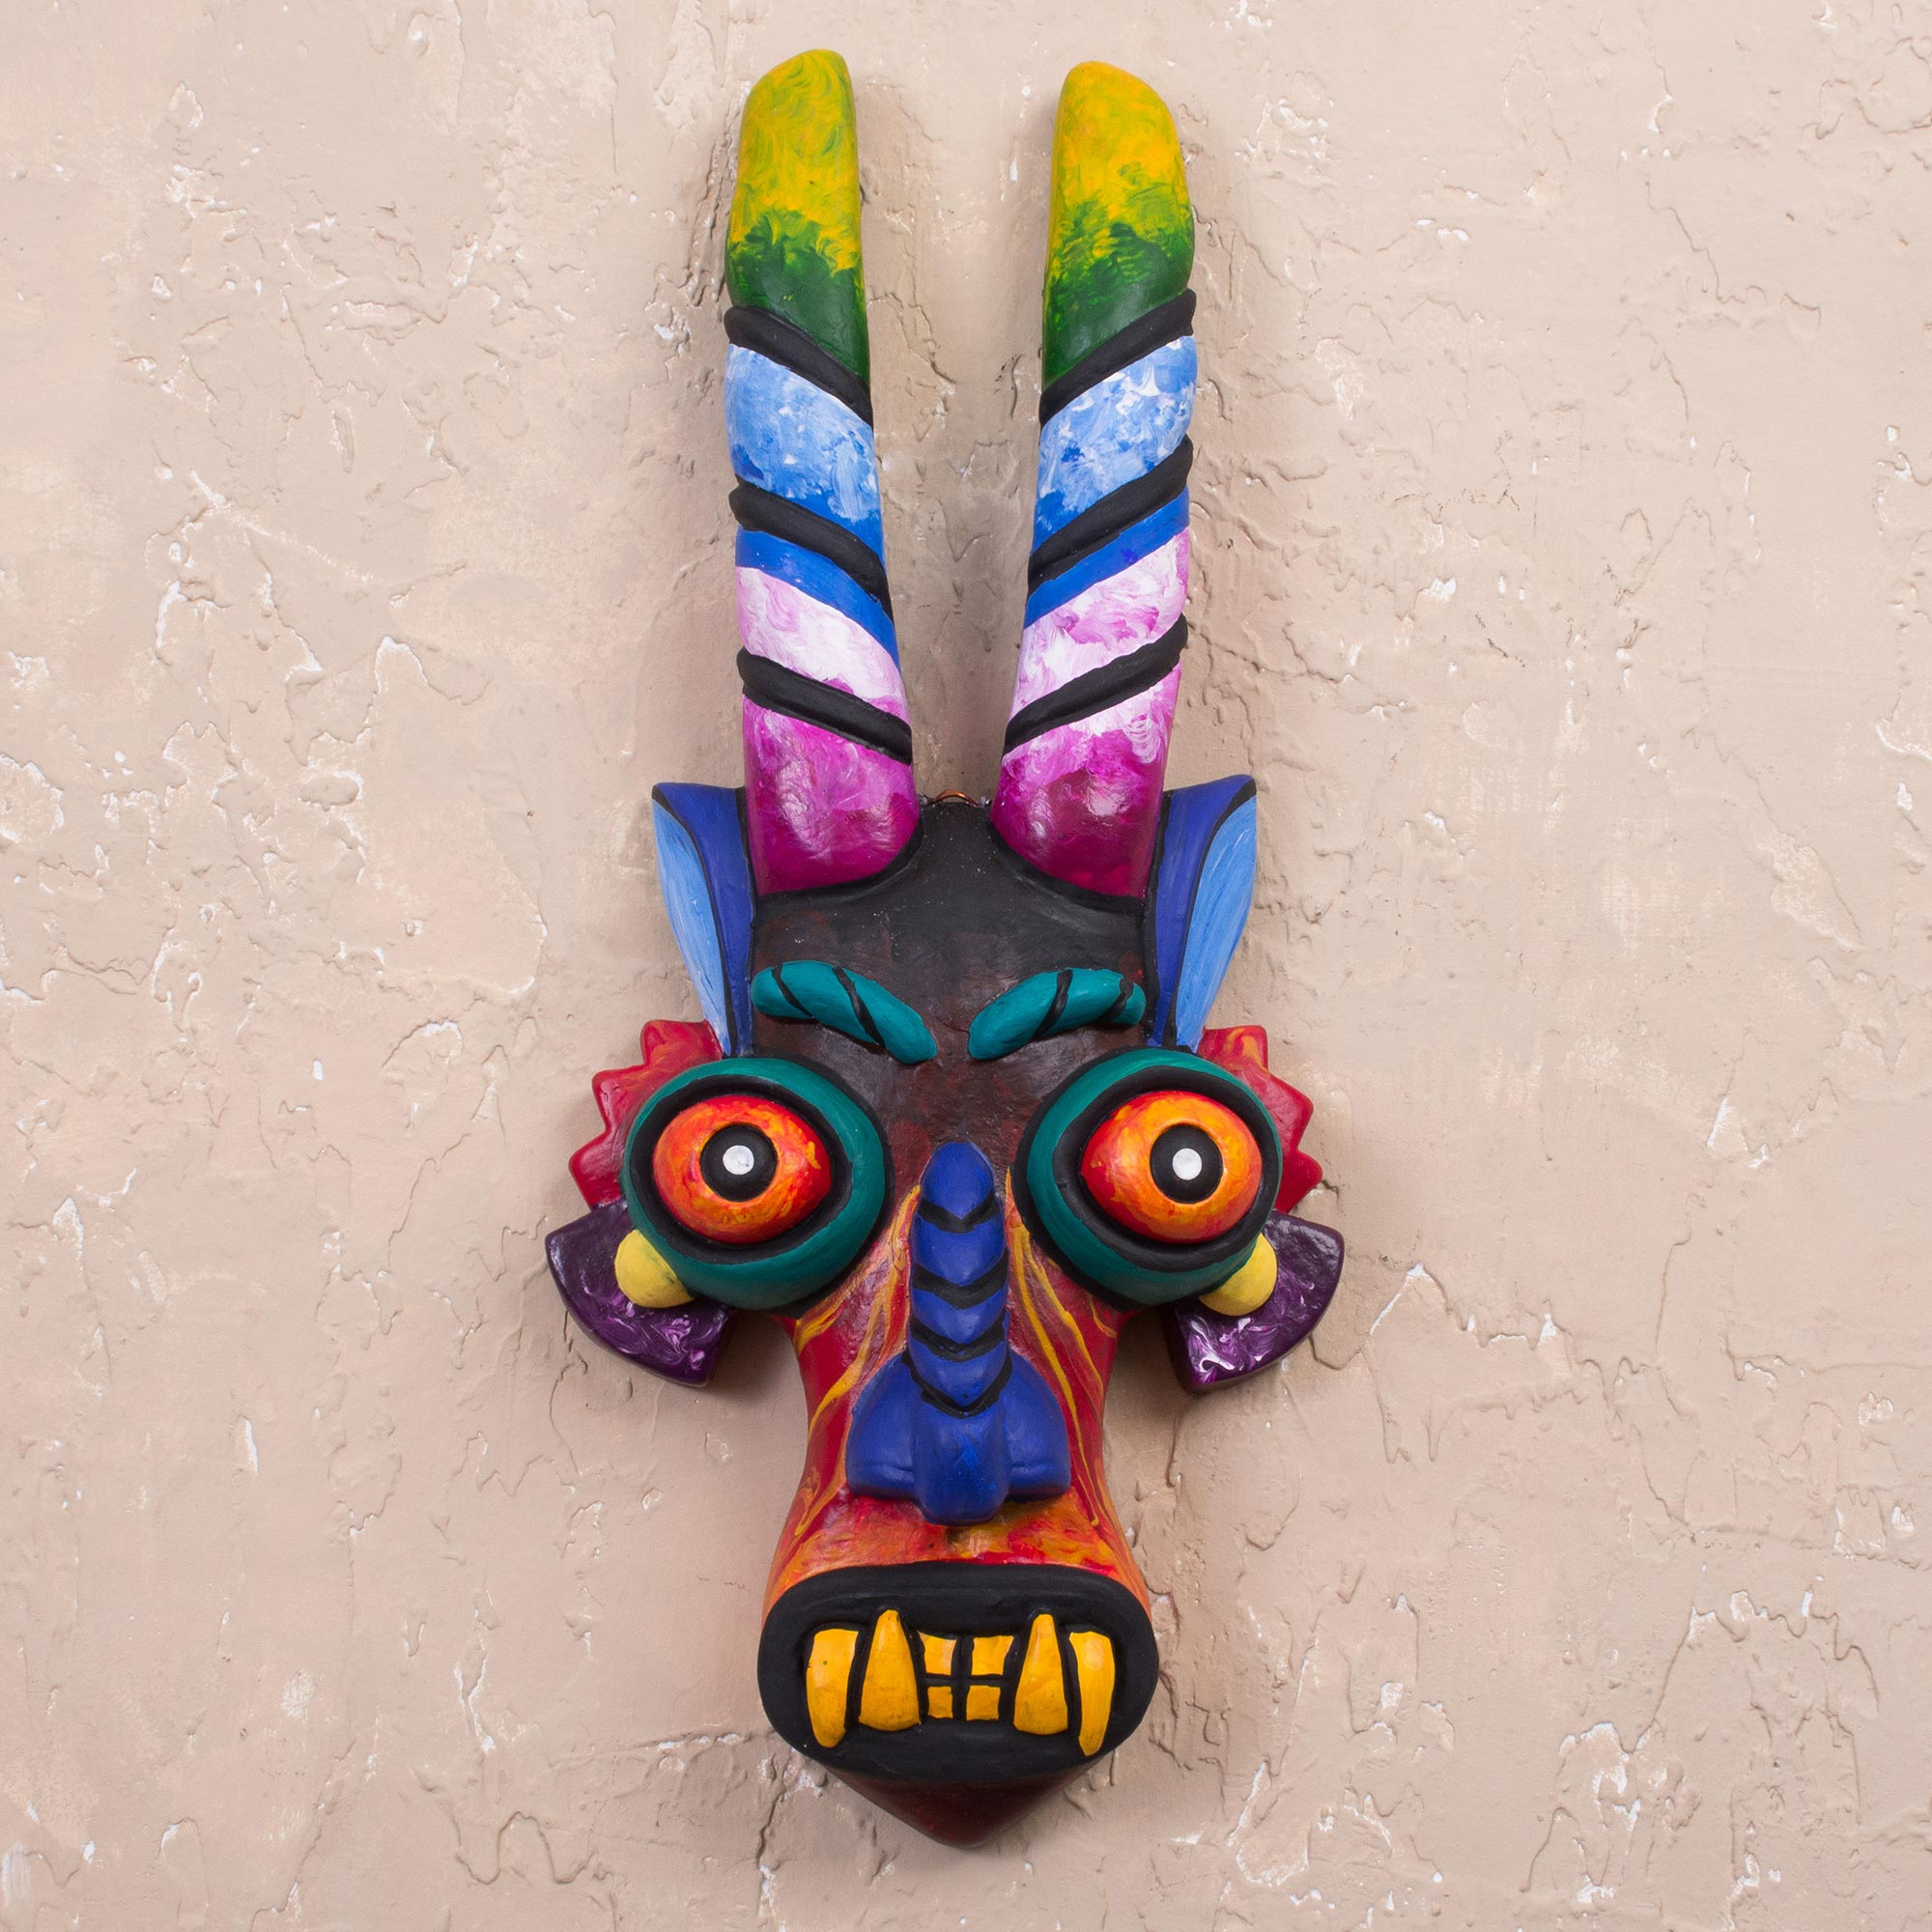 Colorful Ceramic Mask from Peru - Age-Old Devil | NOVICA